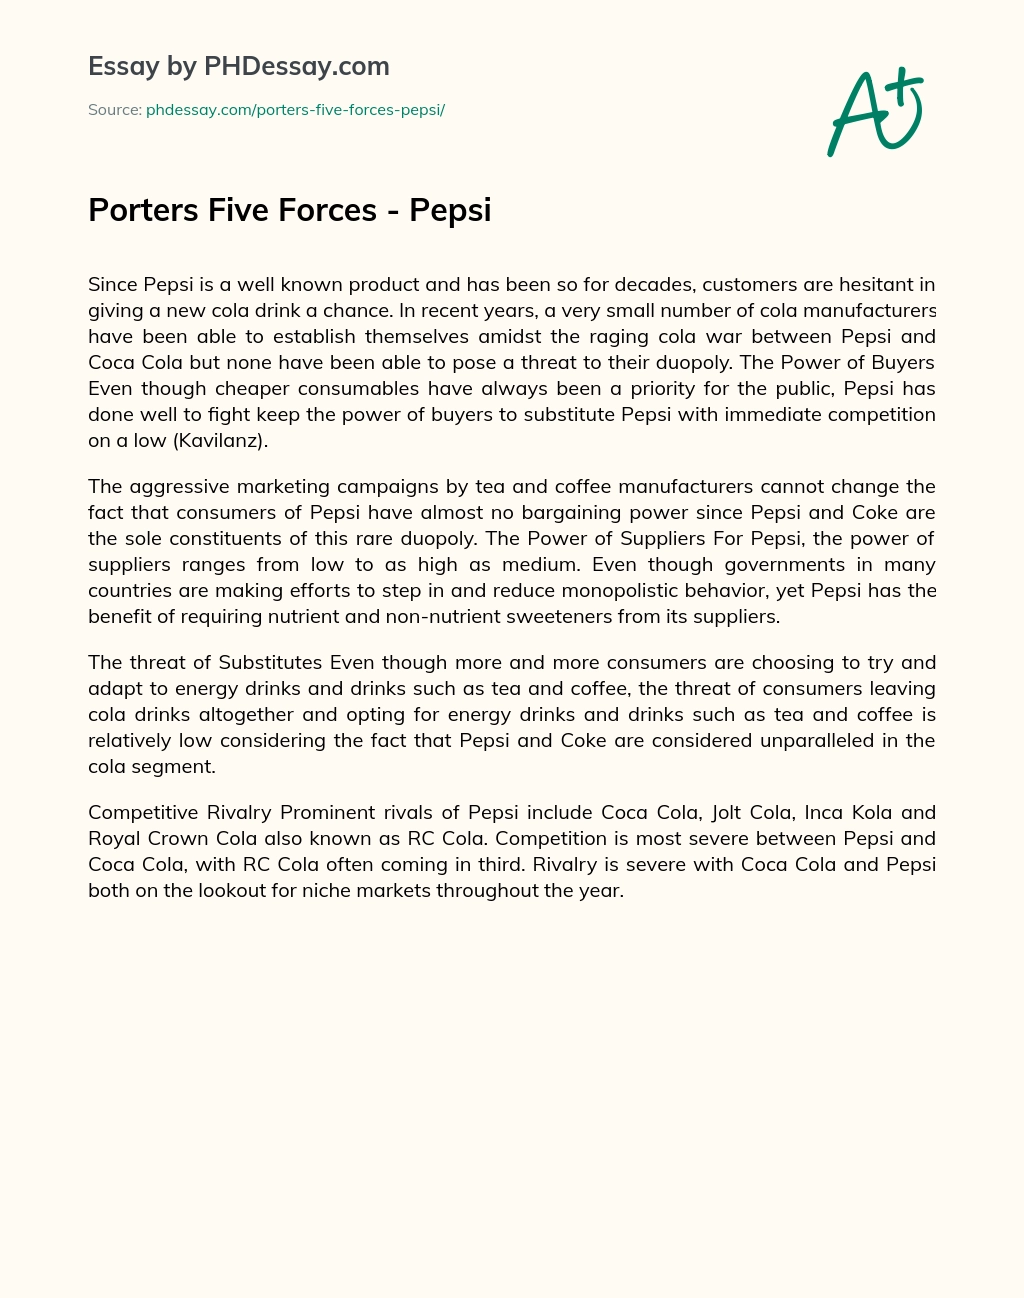 Porters Five Forces – Pepsi essay